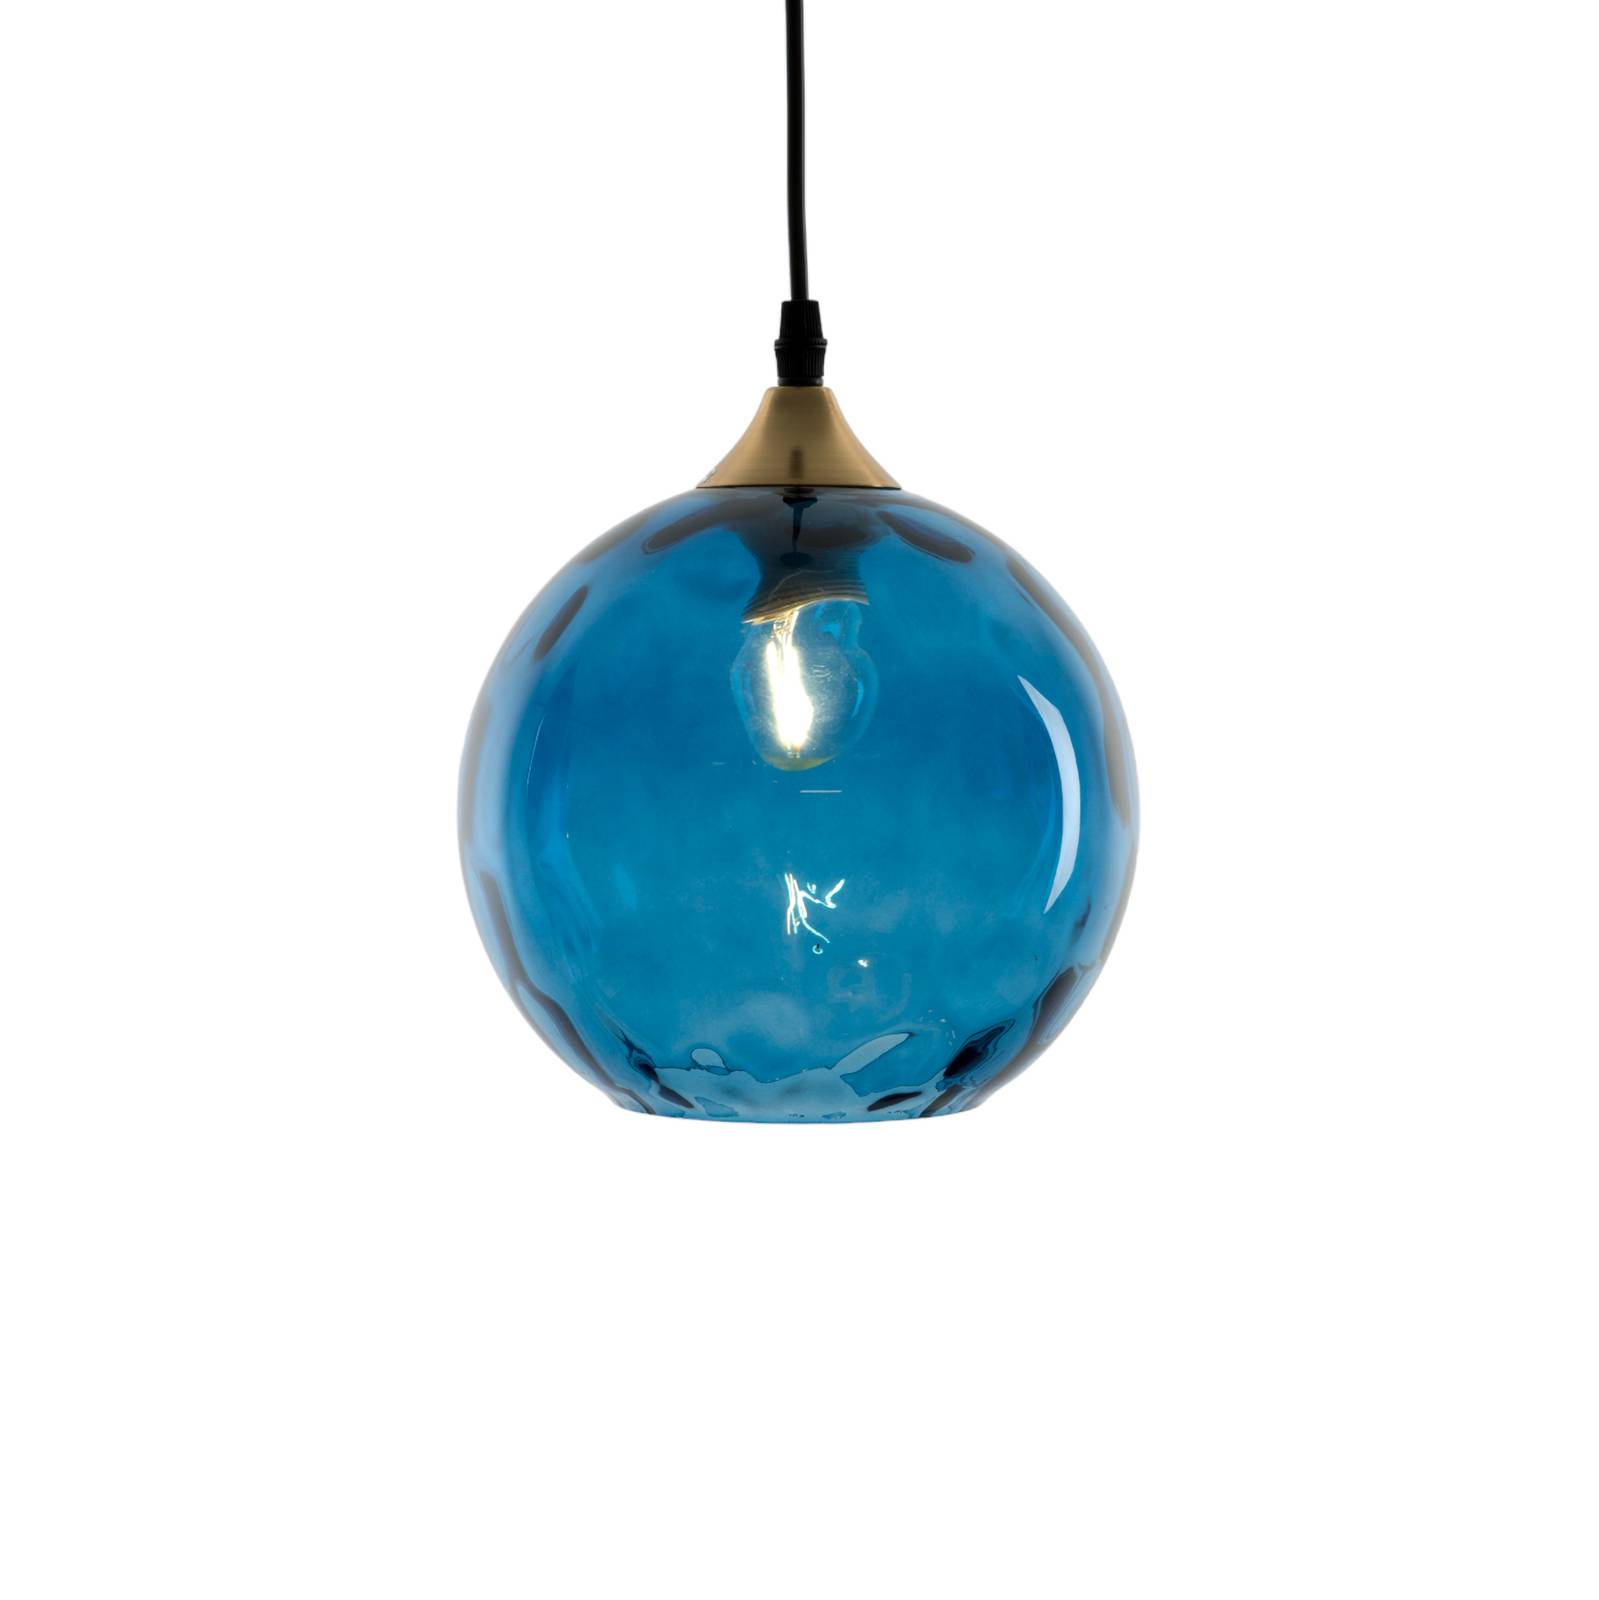 Holländer lógó világítás cagliari 1 izzó kék üvegbúra